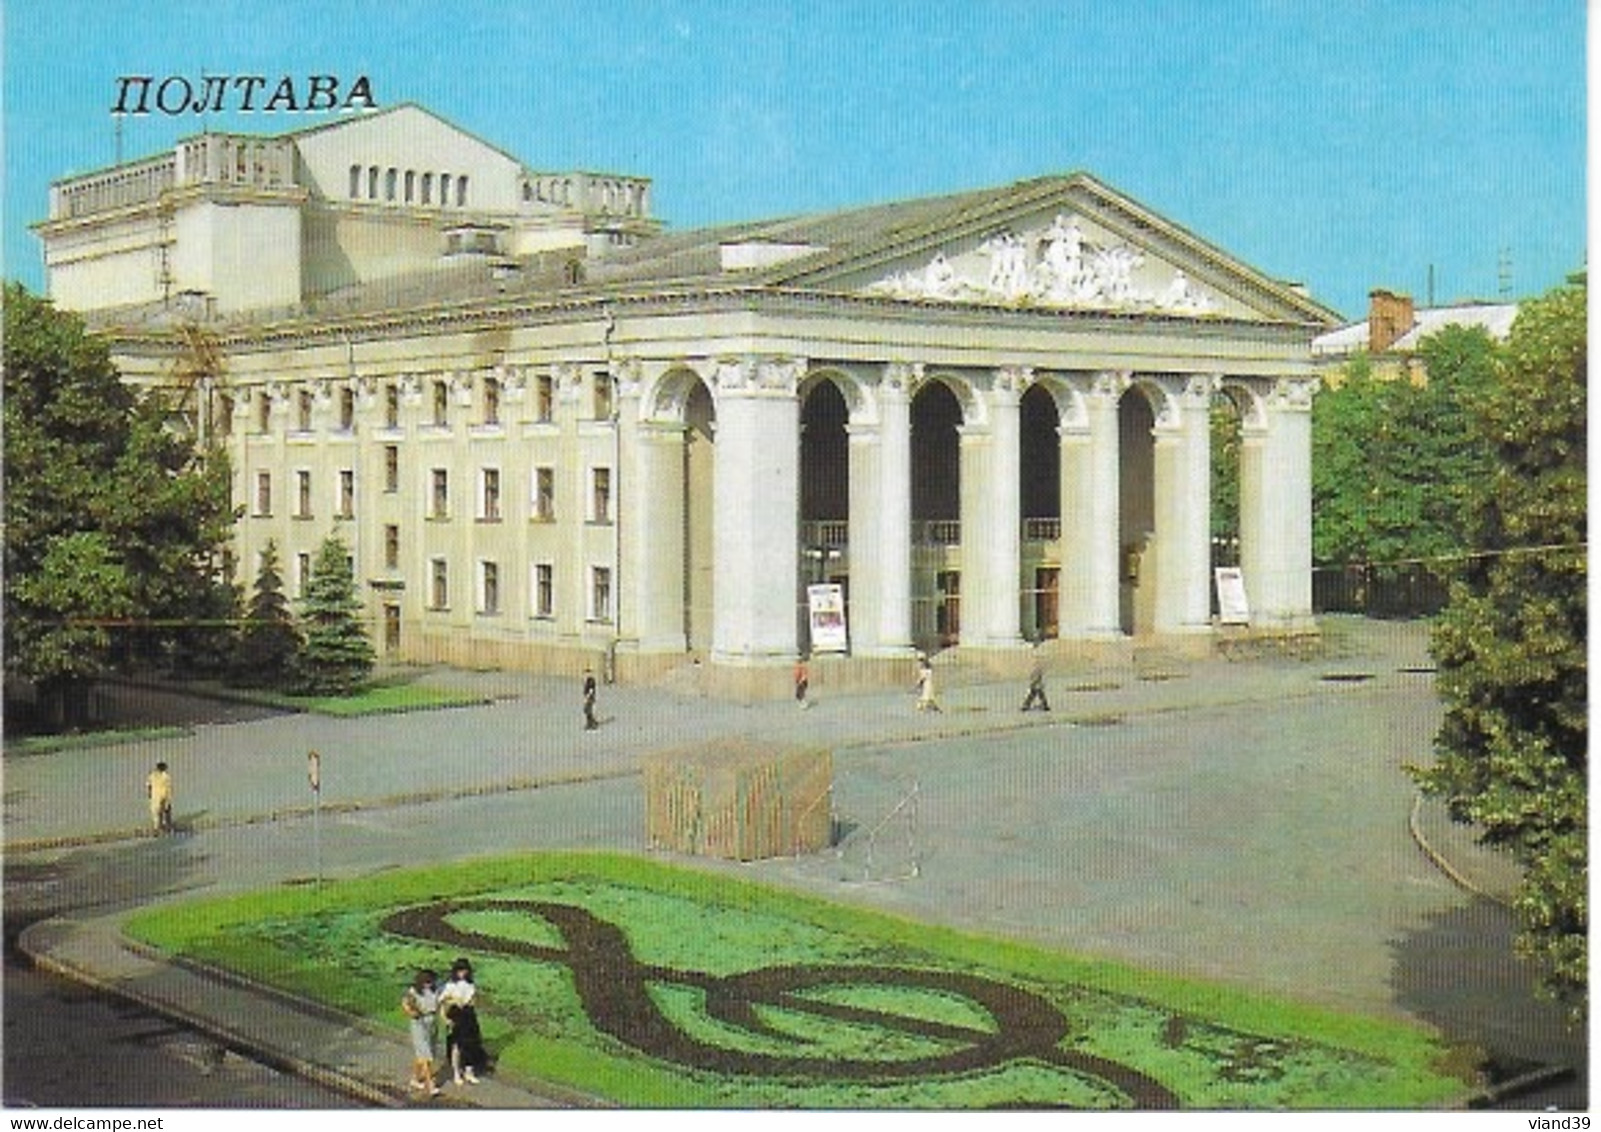 Poltava - 18 vues 10 x 15 cm - 1988       voir scanne. (2)